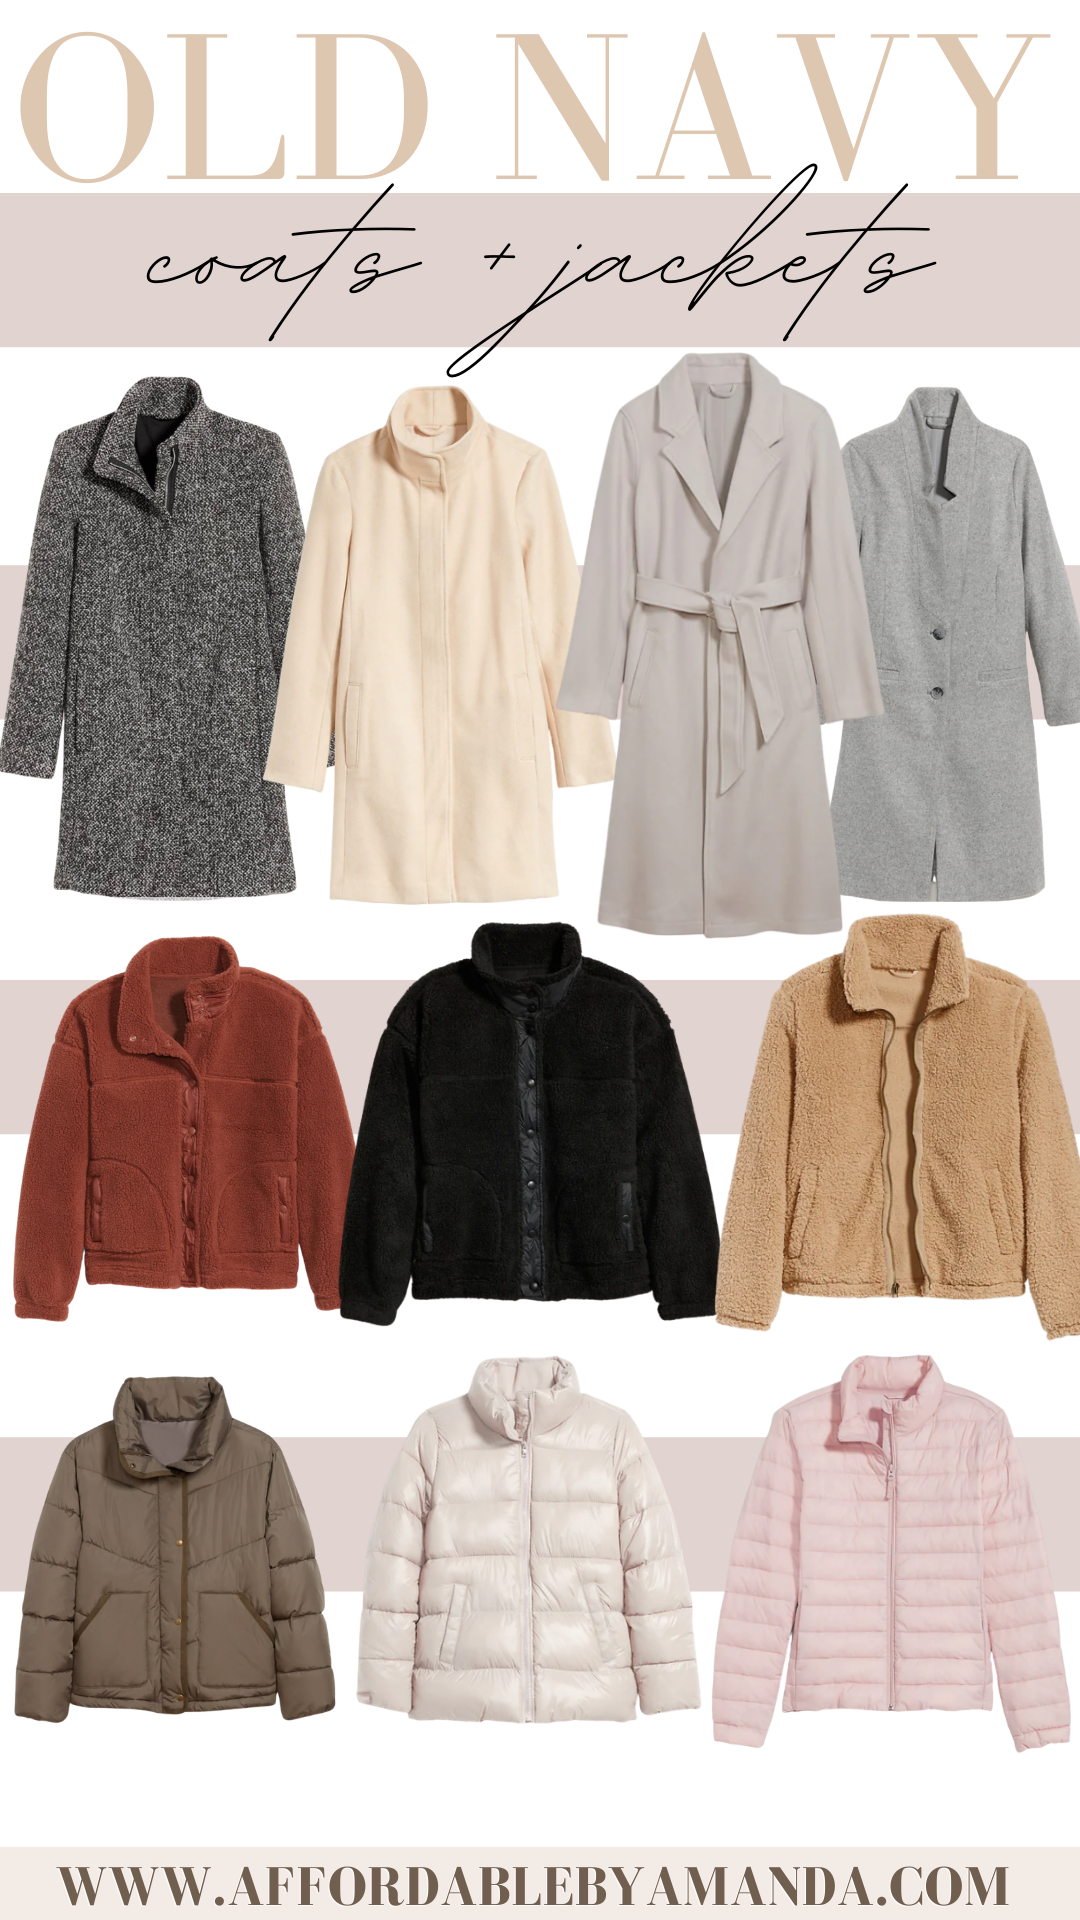 aanvaardbaar Vast en zeker fluit Old Navy Winter Coats & Jackets | Affordable by Amanda